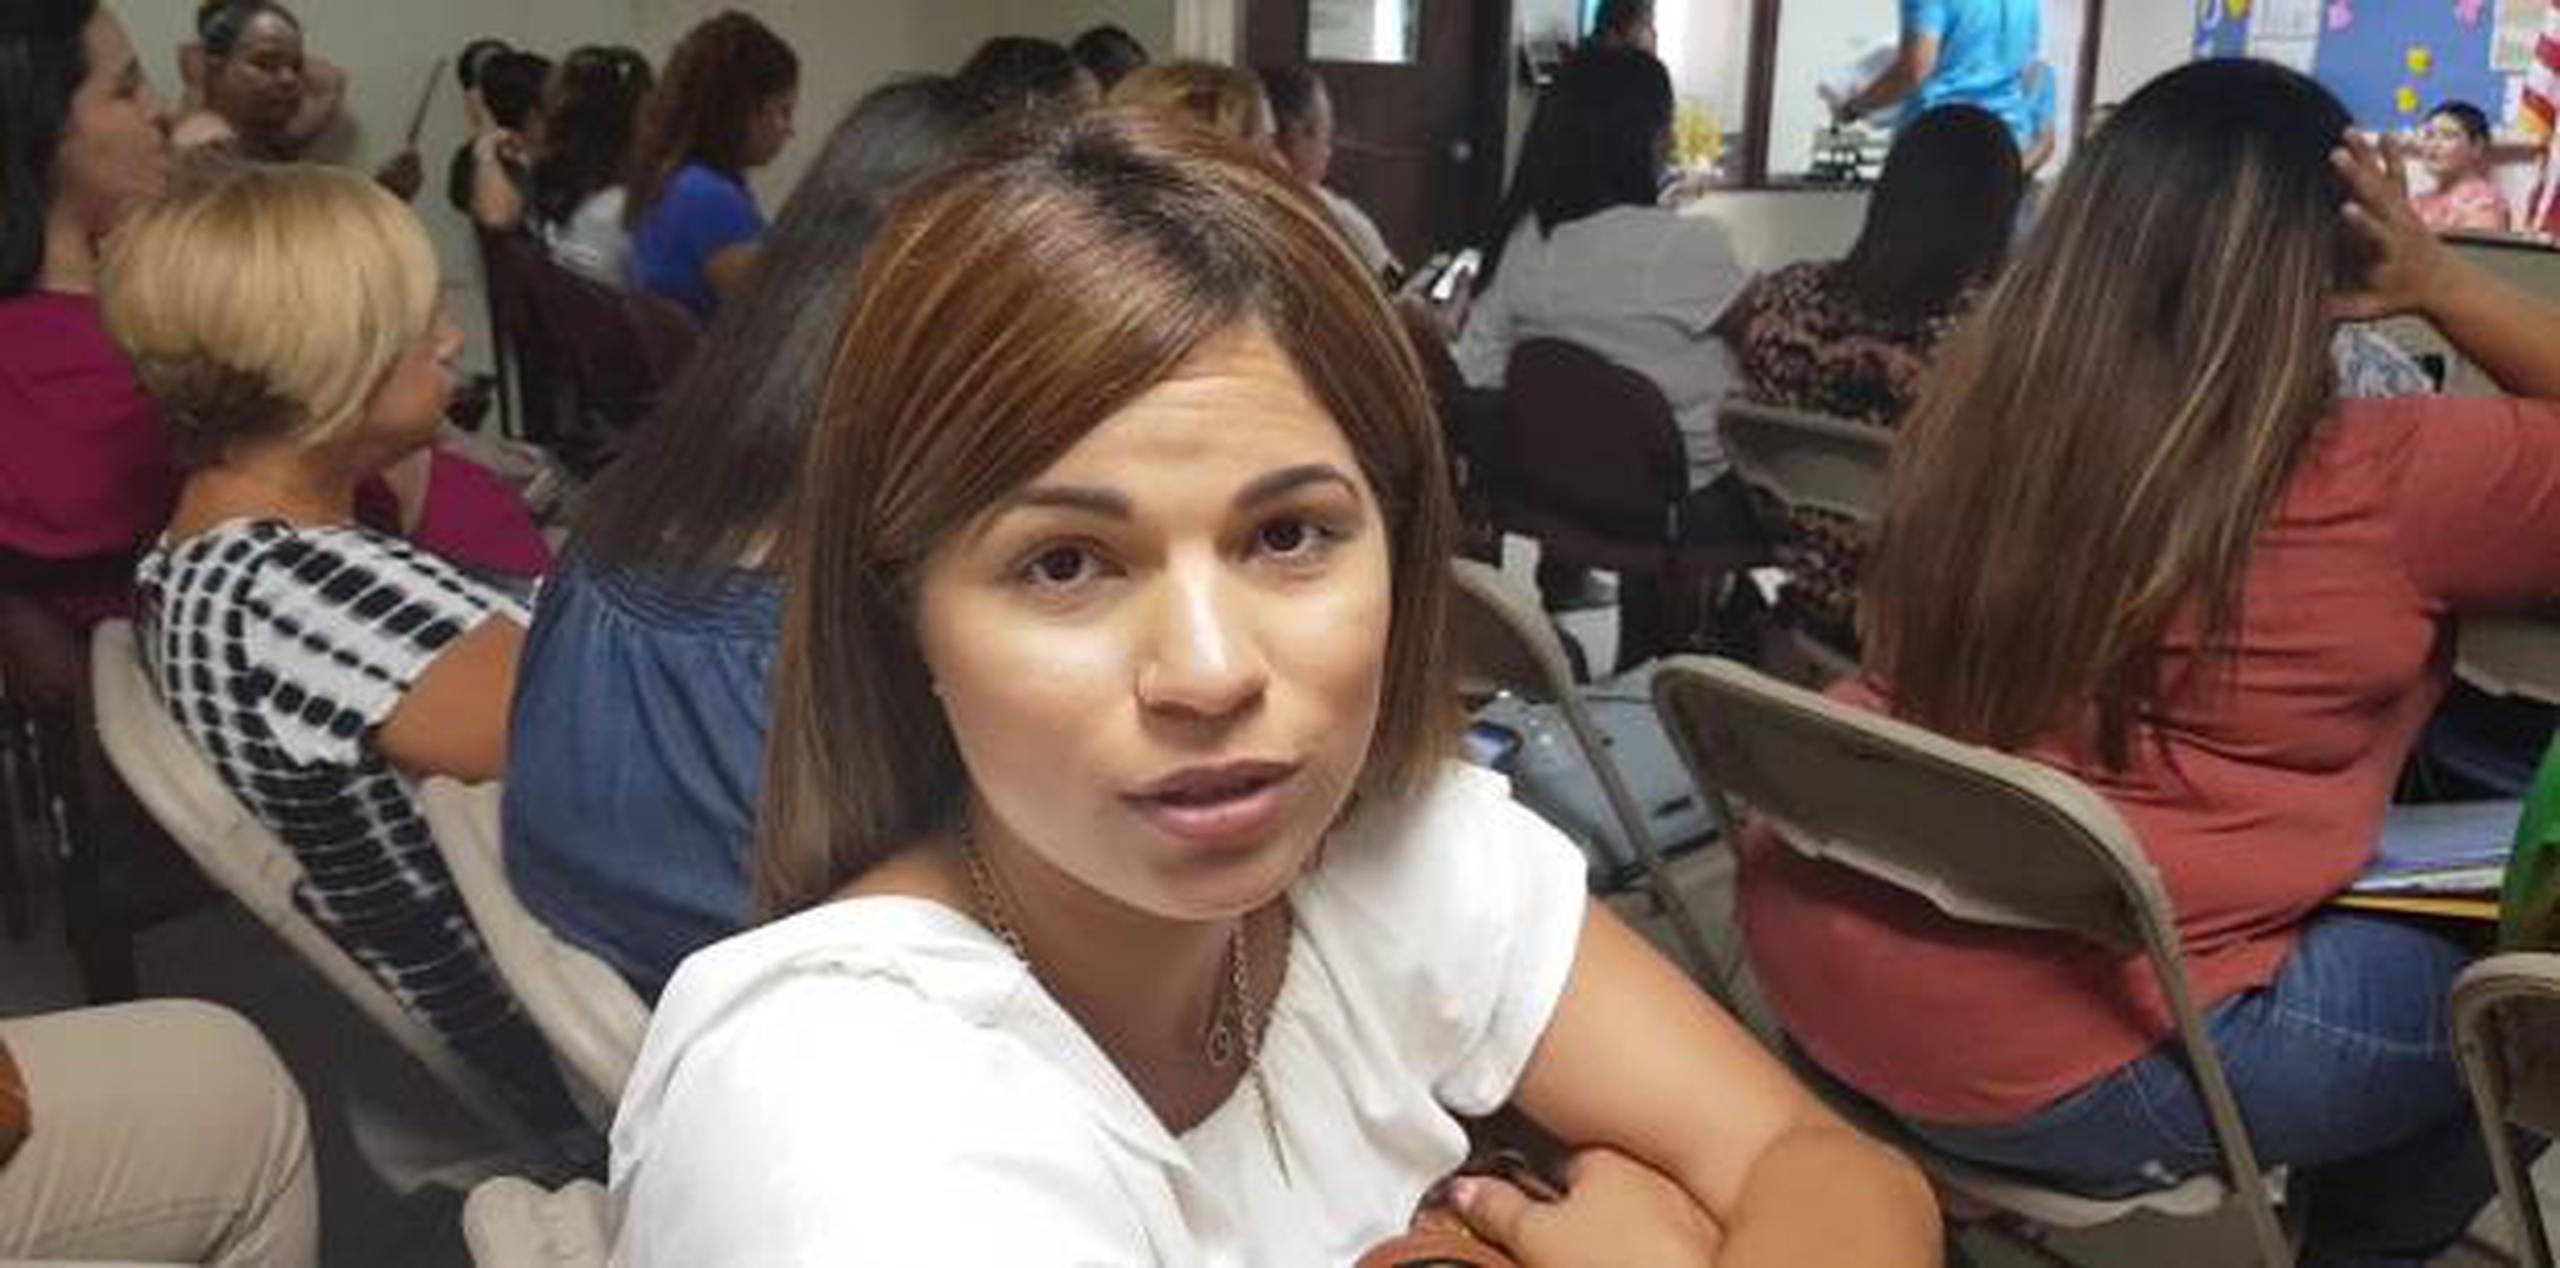 Xhaomi Torres Vázquez  viajó desde Vieques para solicitar una plaza, aunque lleva tres años dando clases allí.  (Para Primera Hora / Cesiach López Maldonado)